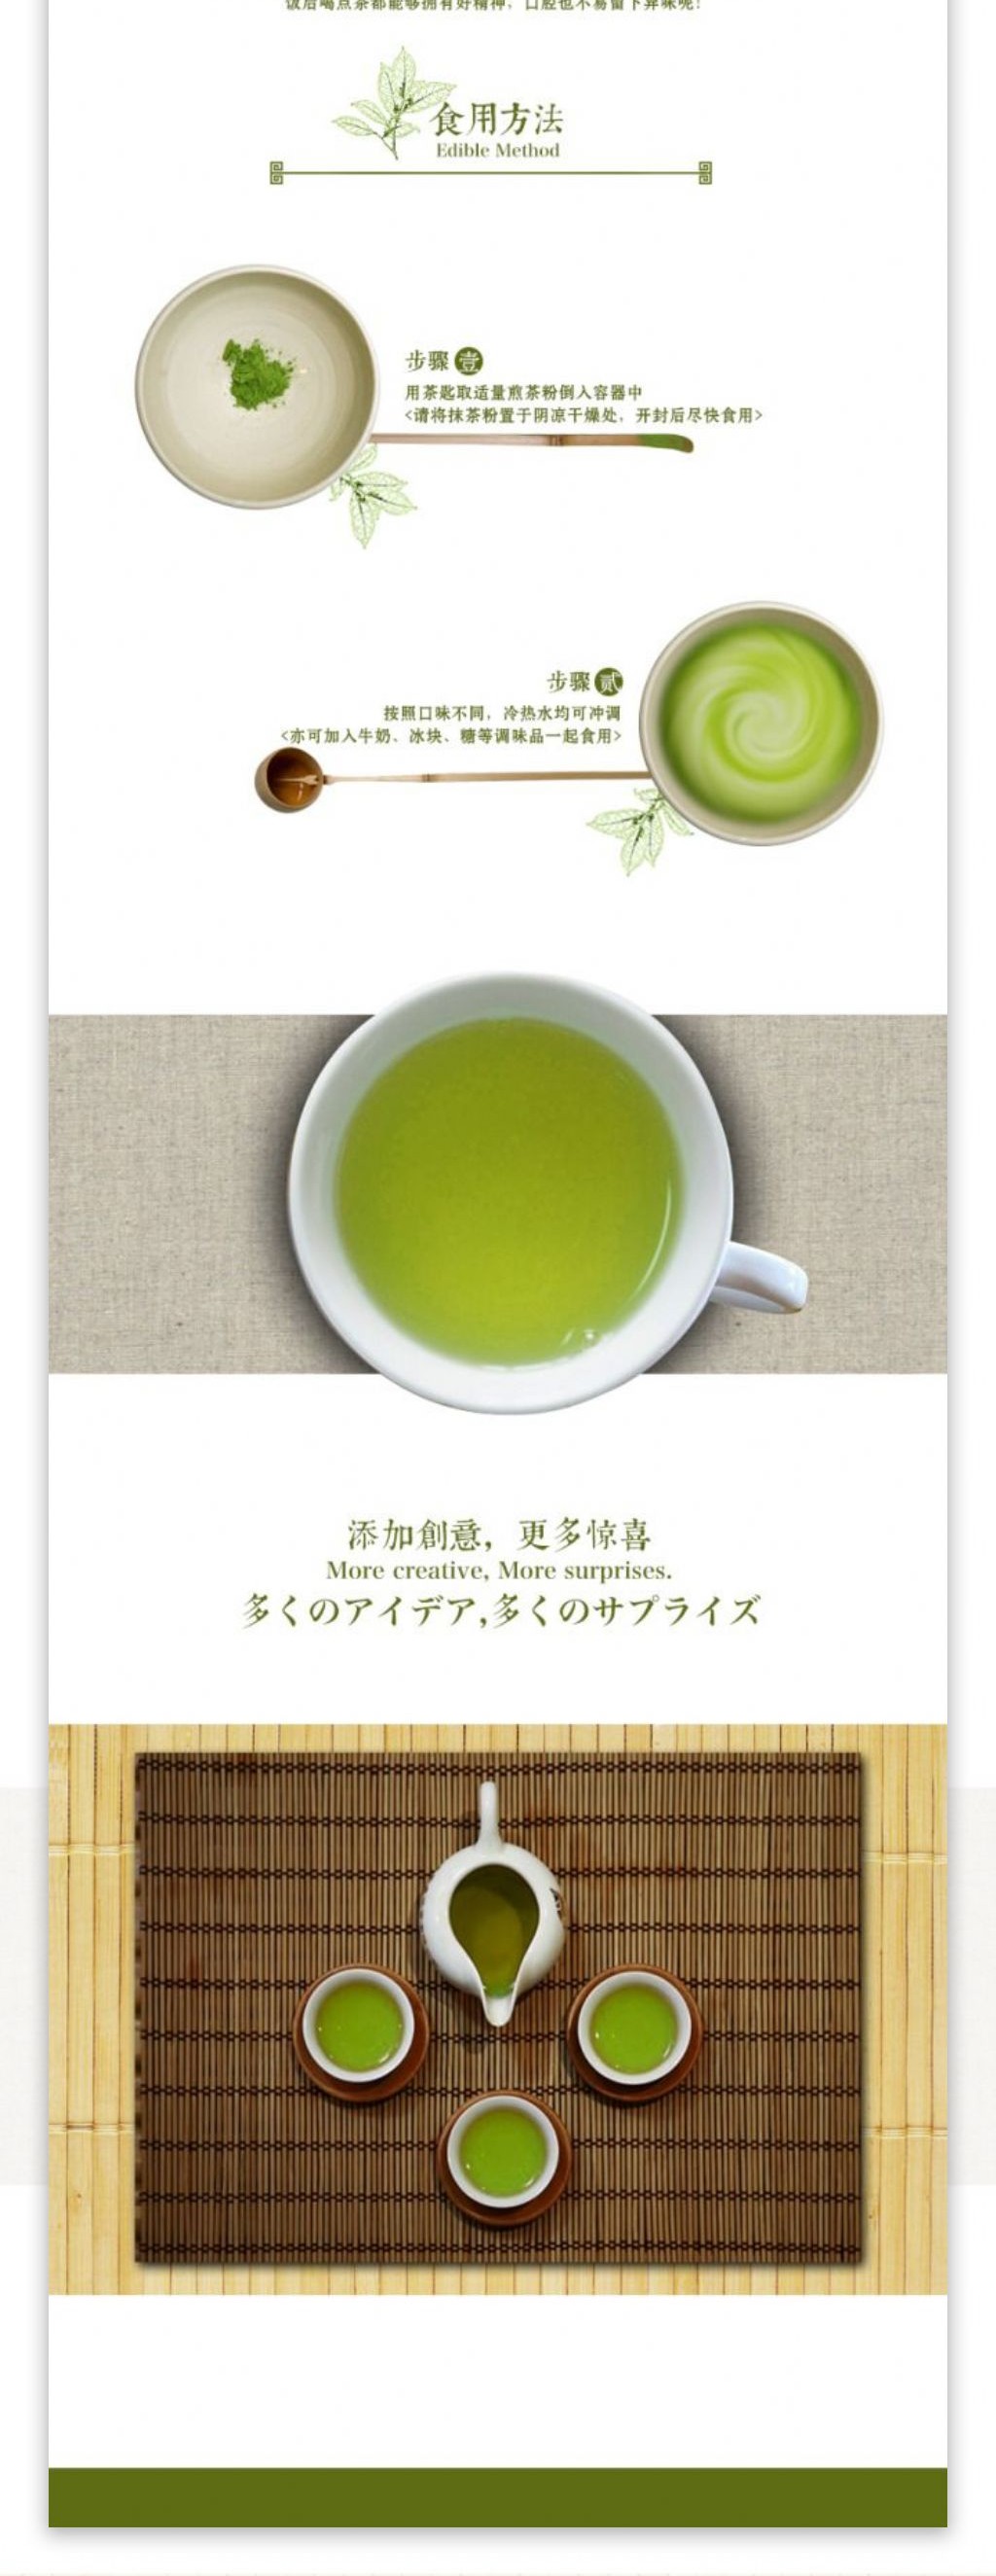 淘宝天猫宝贝描述茶叶饮料饮品日本